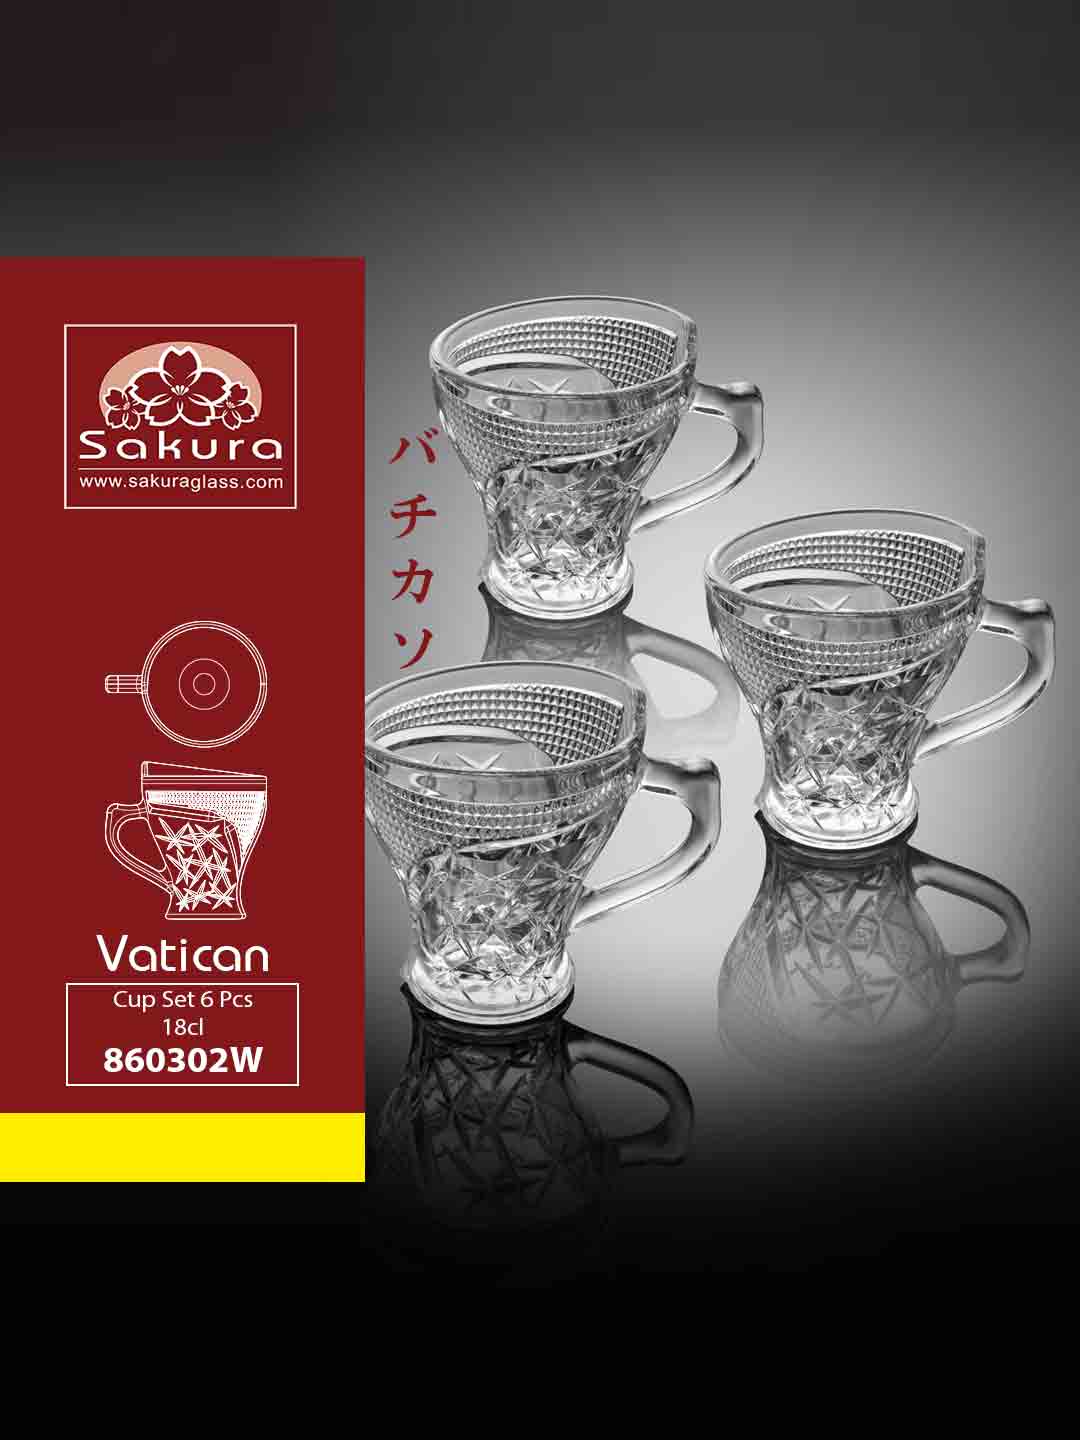 Sakura Product Vatican Cup Set 6 Pcs 18cl 860302W